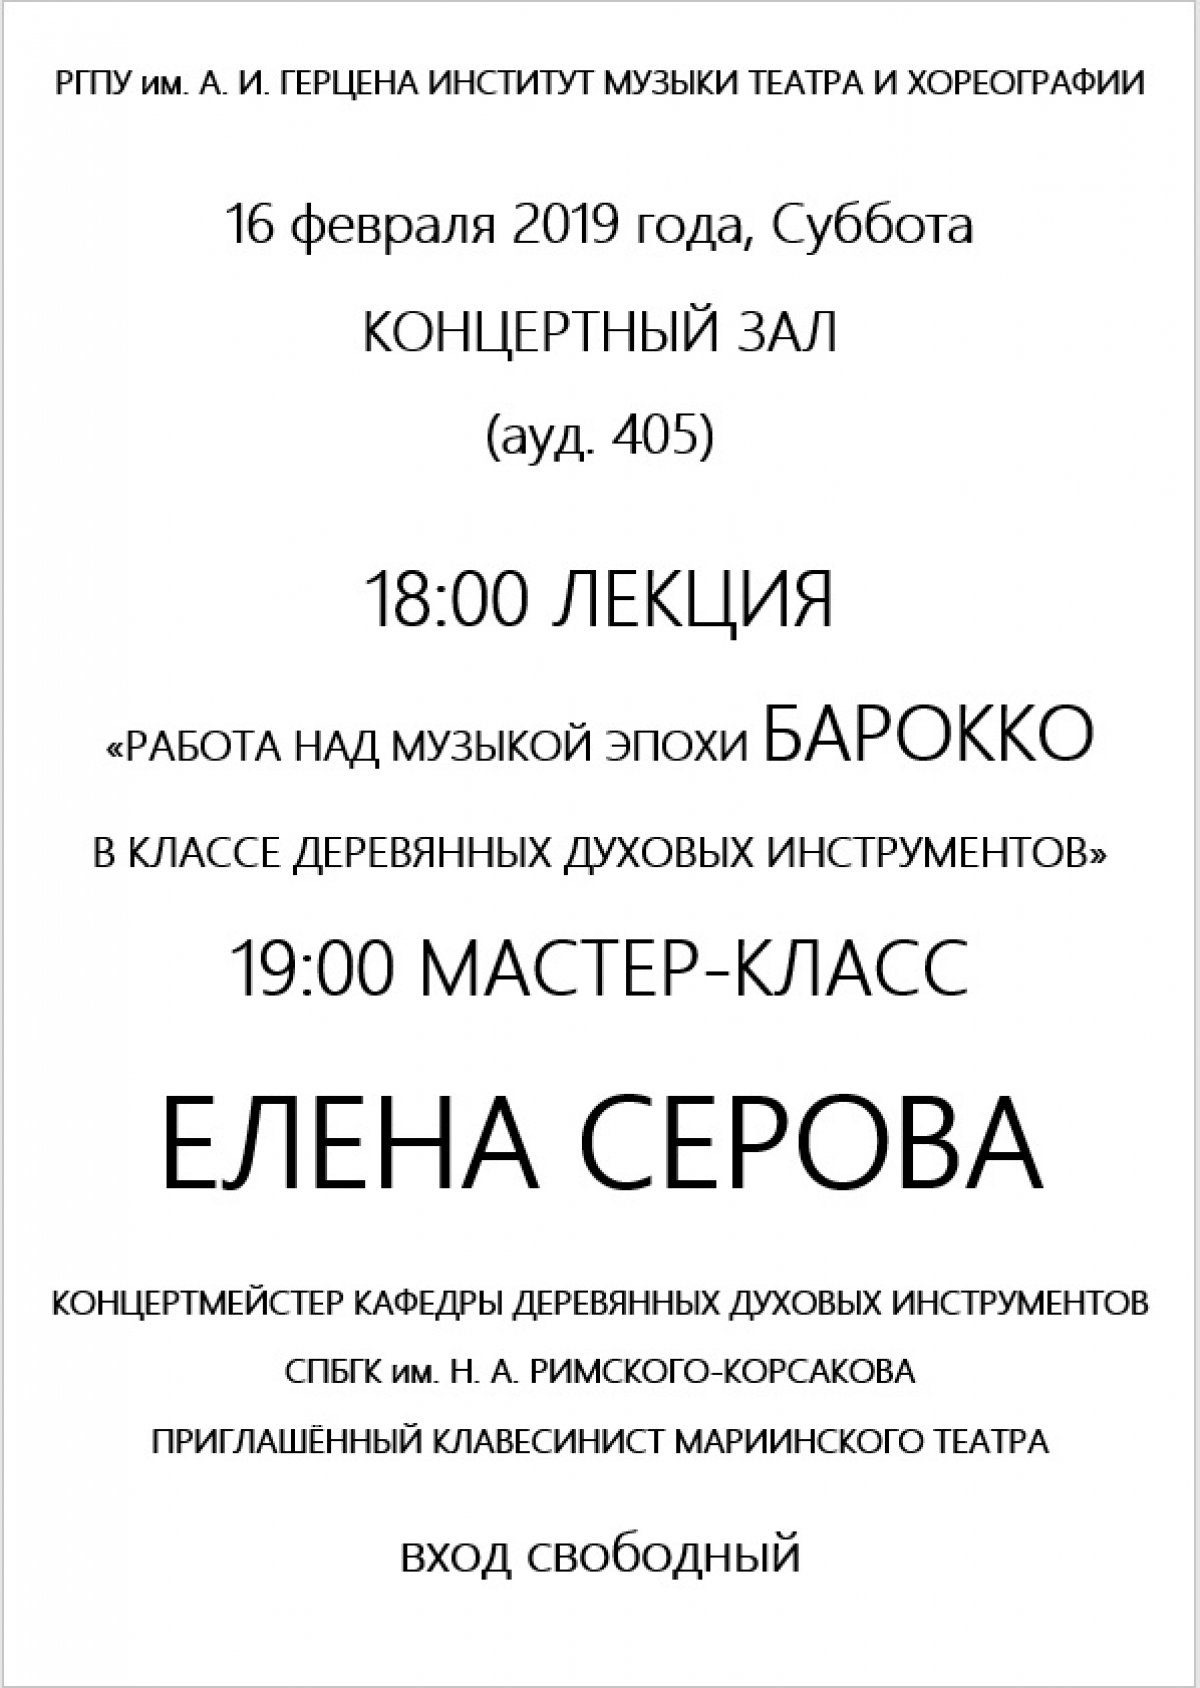 16 февраля все желающие приглашаются в Институт музыки театра и хореографии РГПУ им. А.И.Герцена на: